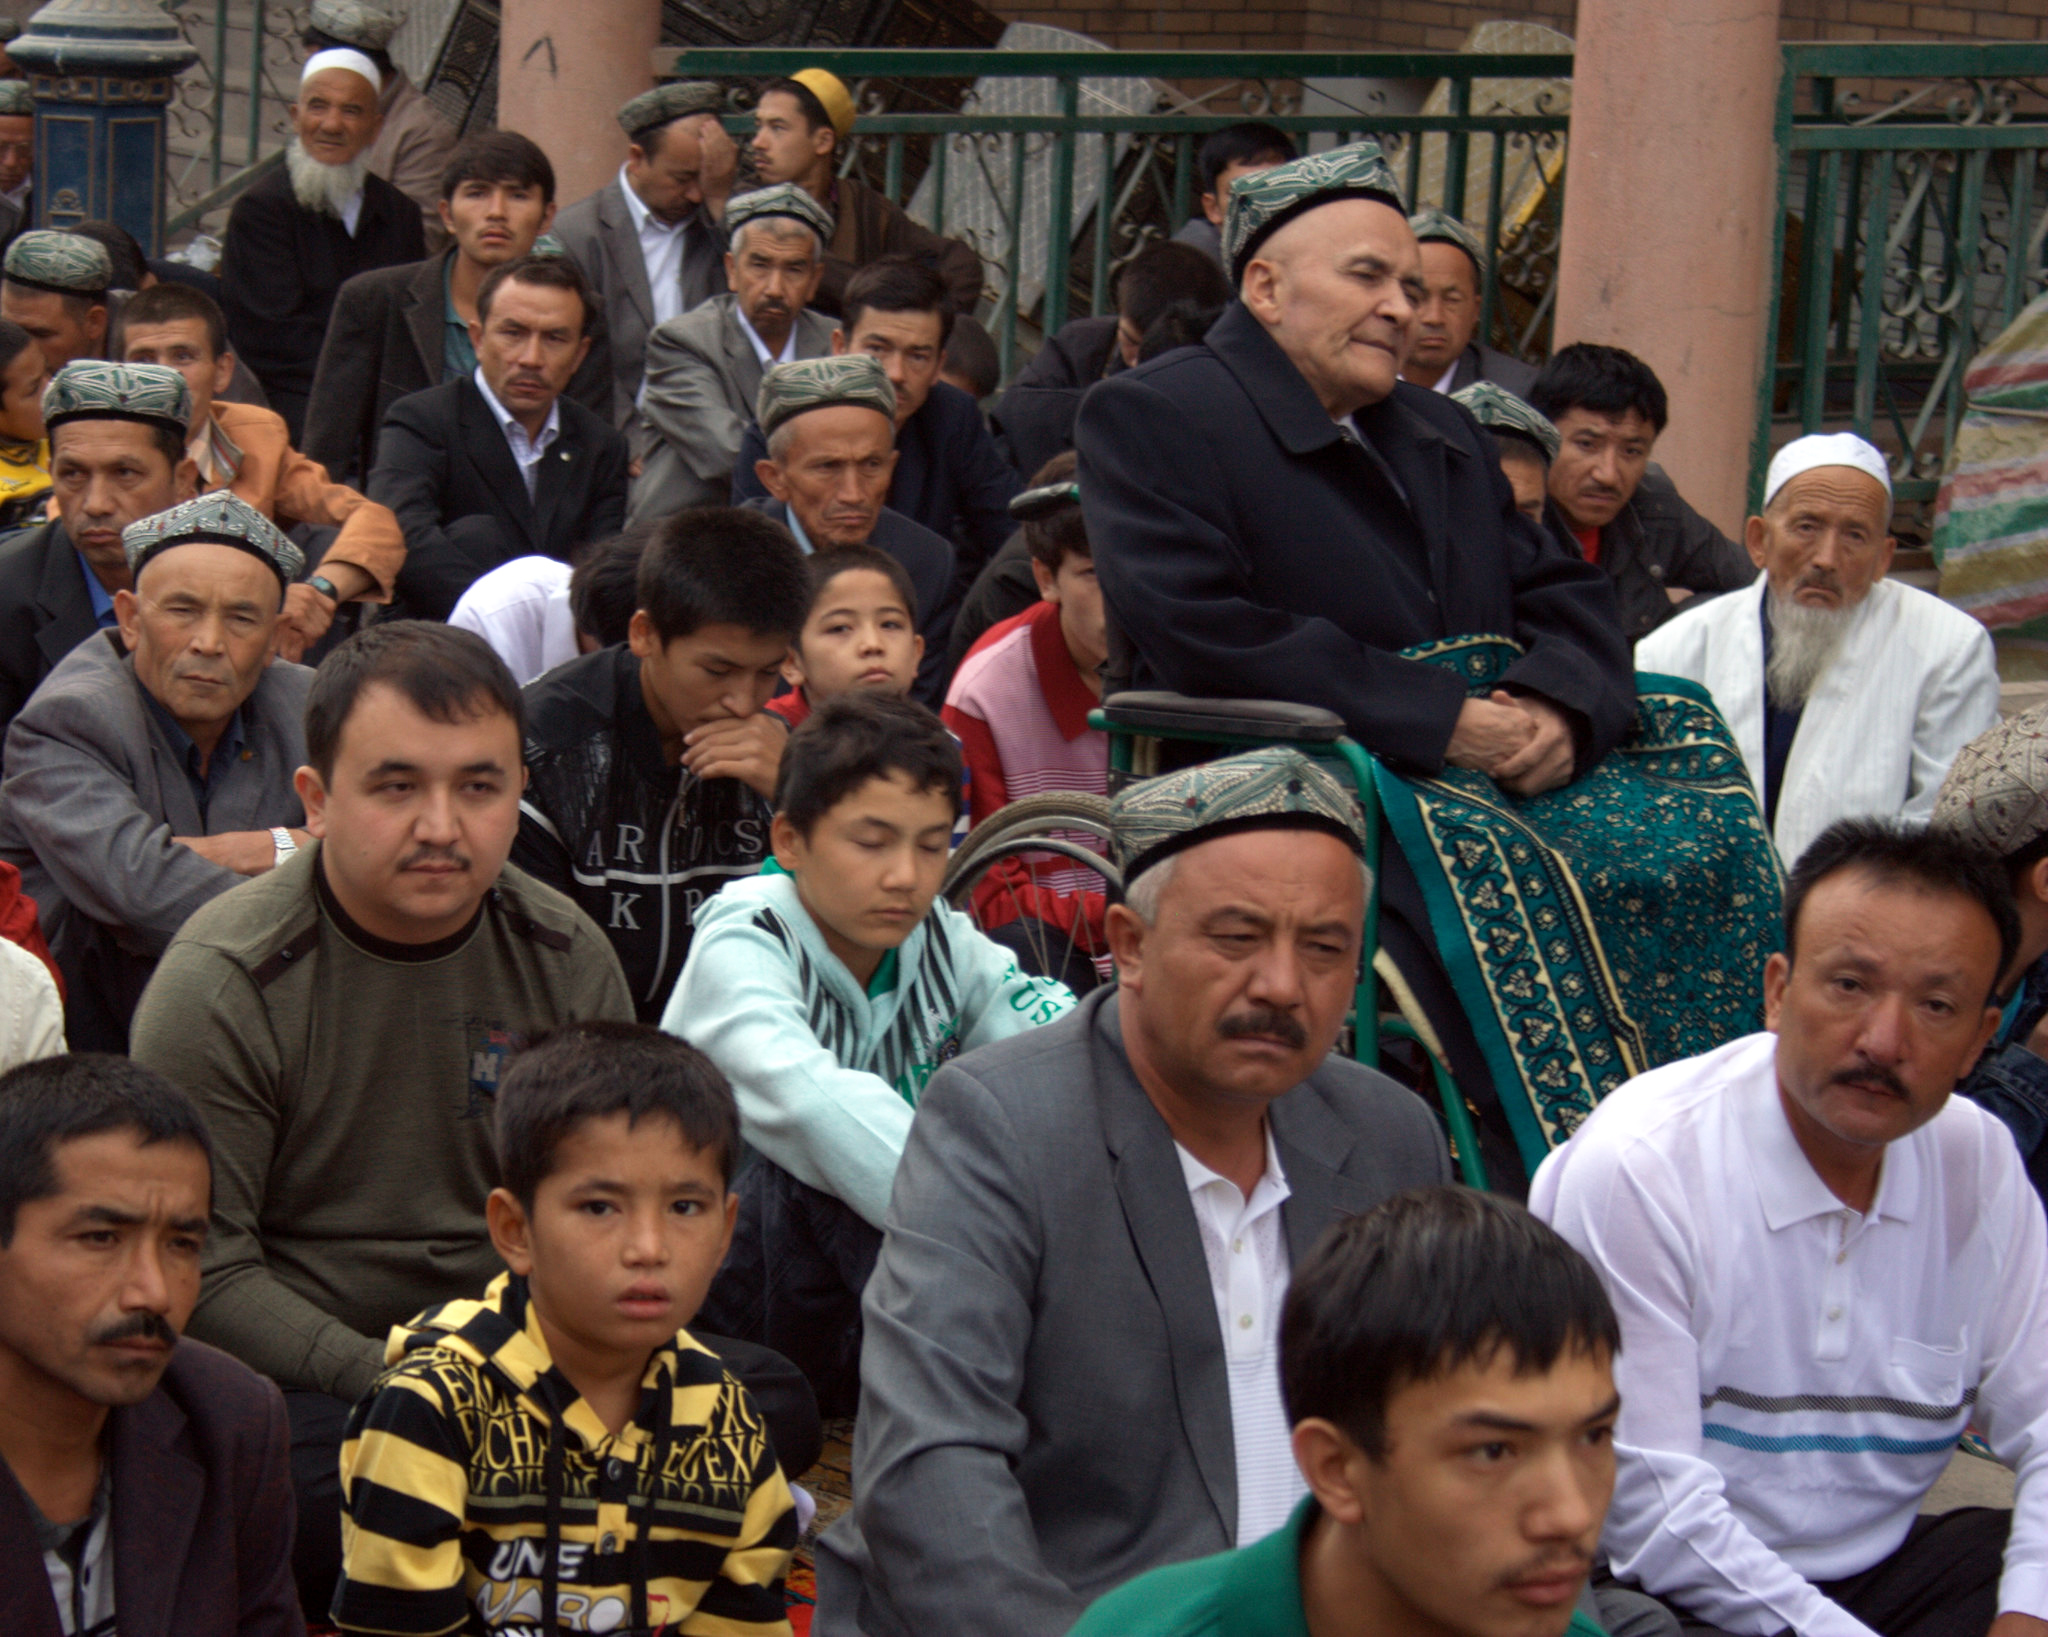 modern uyghur people